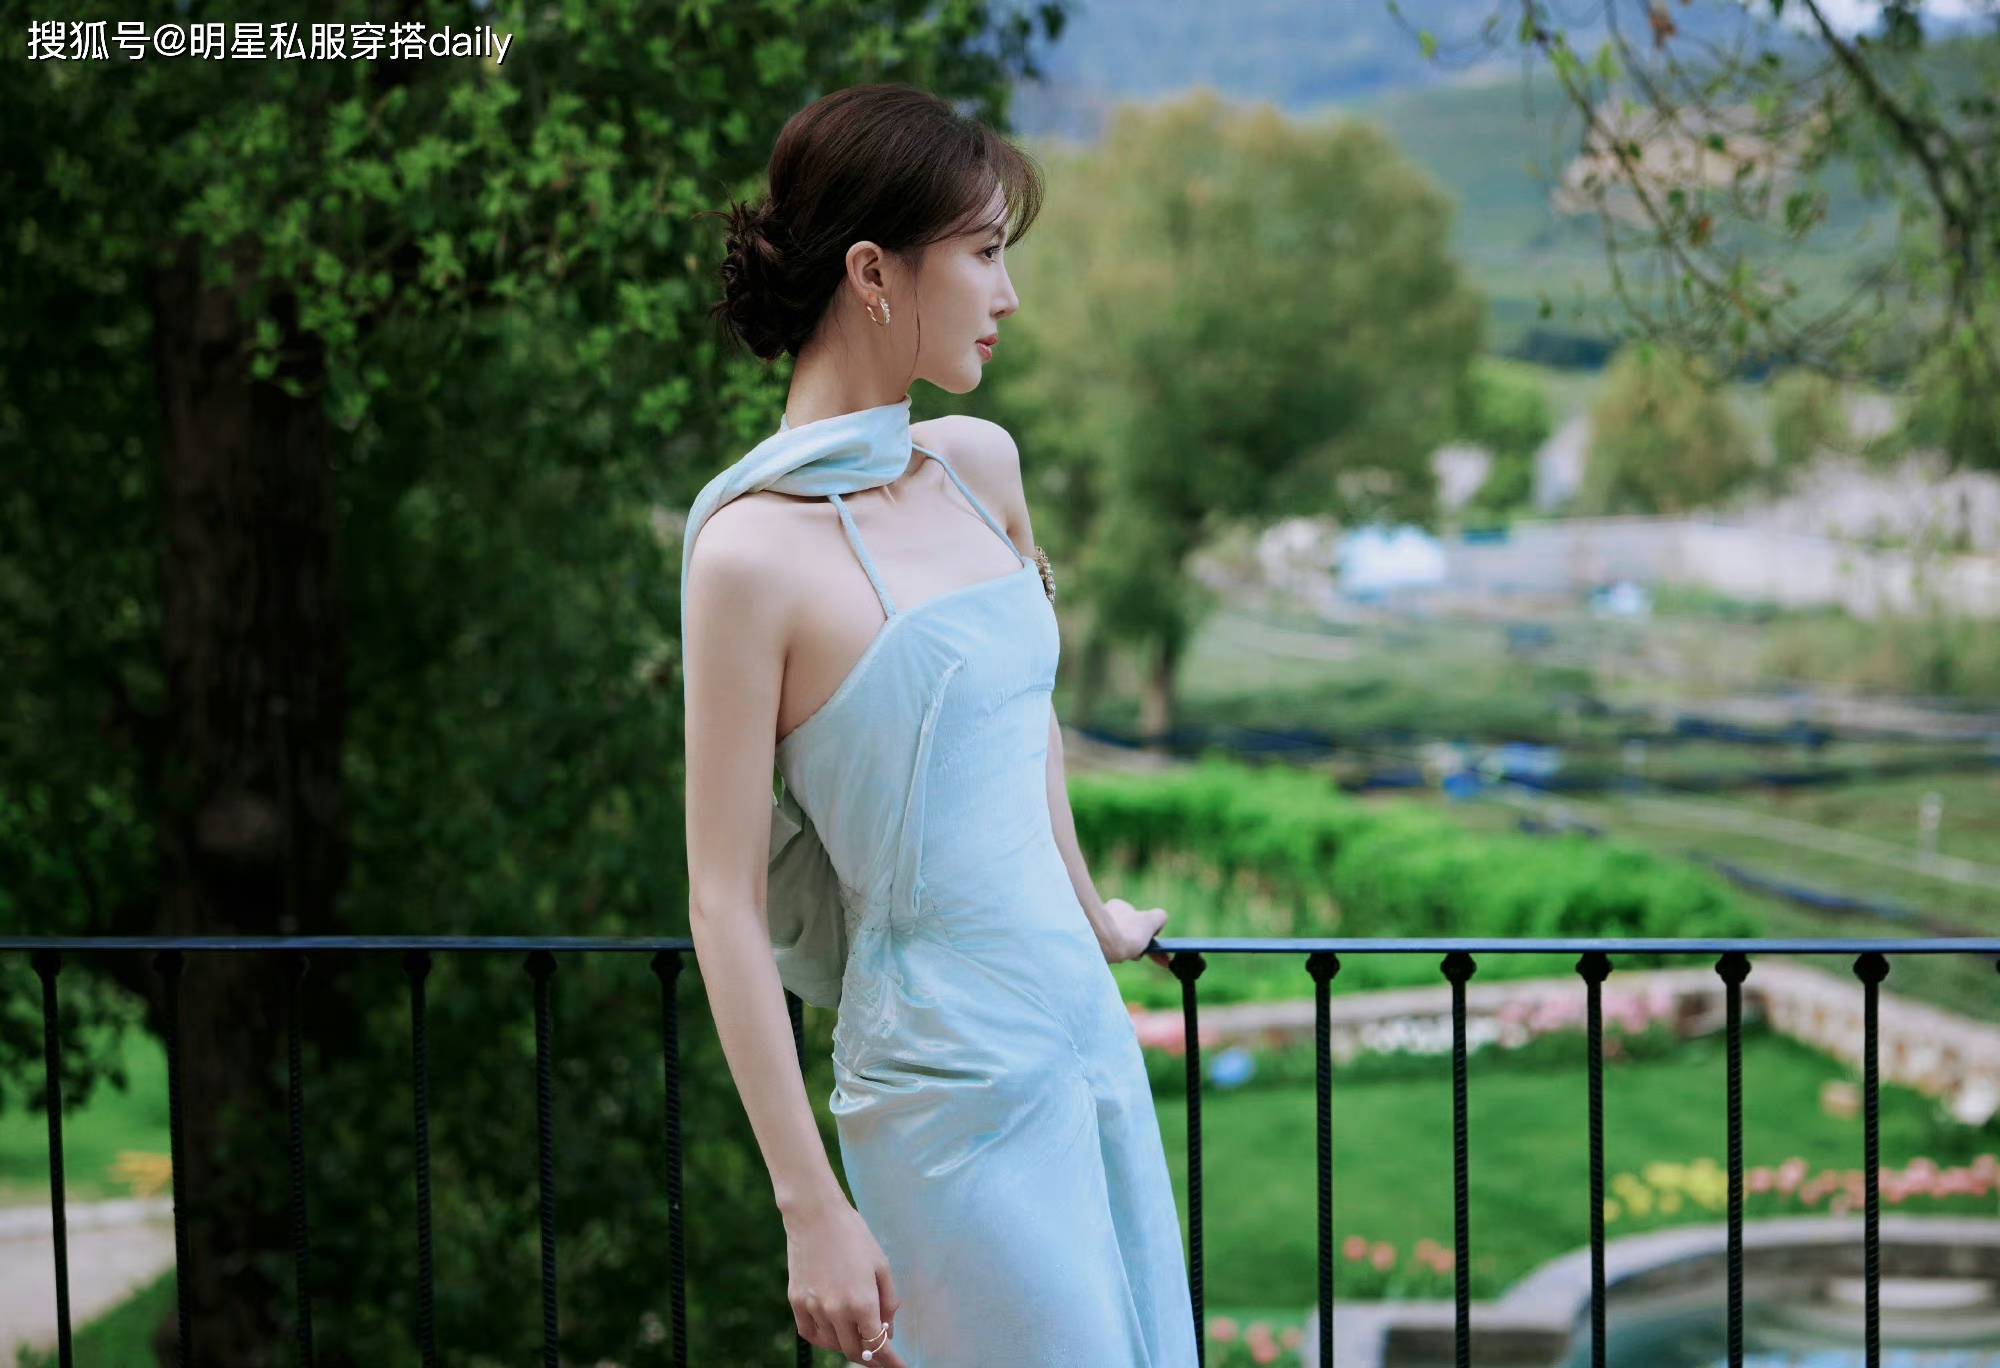 吉娜穿着一件冰蓝色的挂脖连衣裙，与美丽的风景融为一体，是大自然喜爱的美丽。